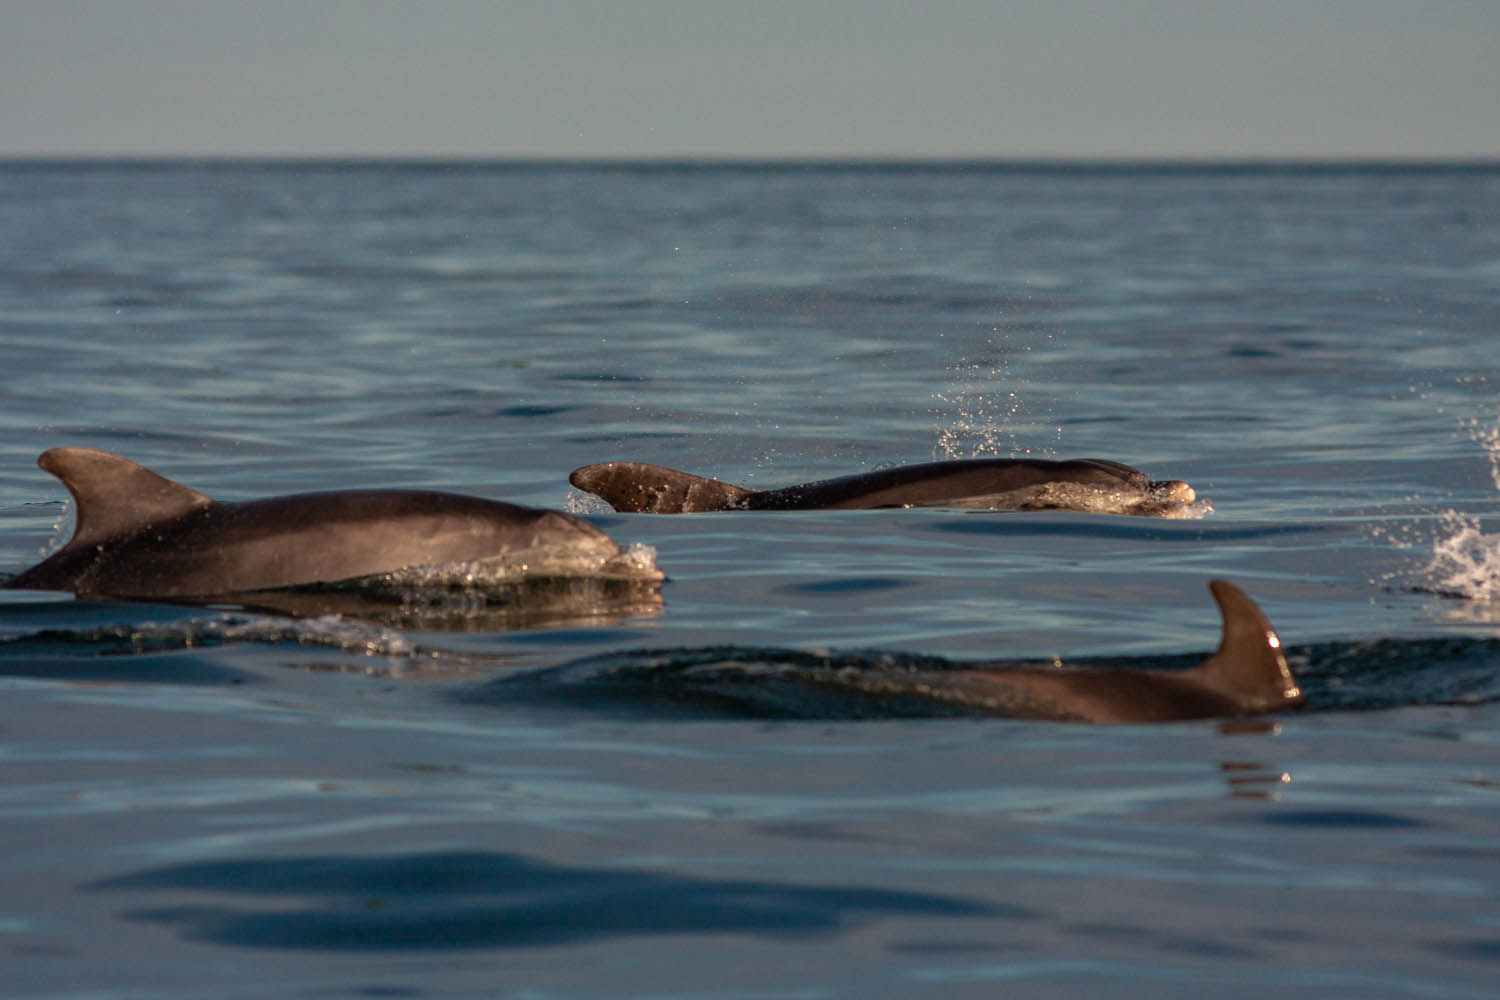 Saut de grand dauphin aux Minquiers dans le Golfe normand breton (c) Wild seas explorer